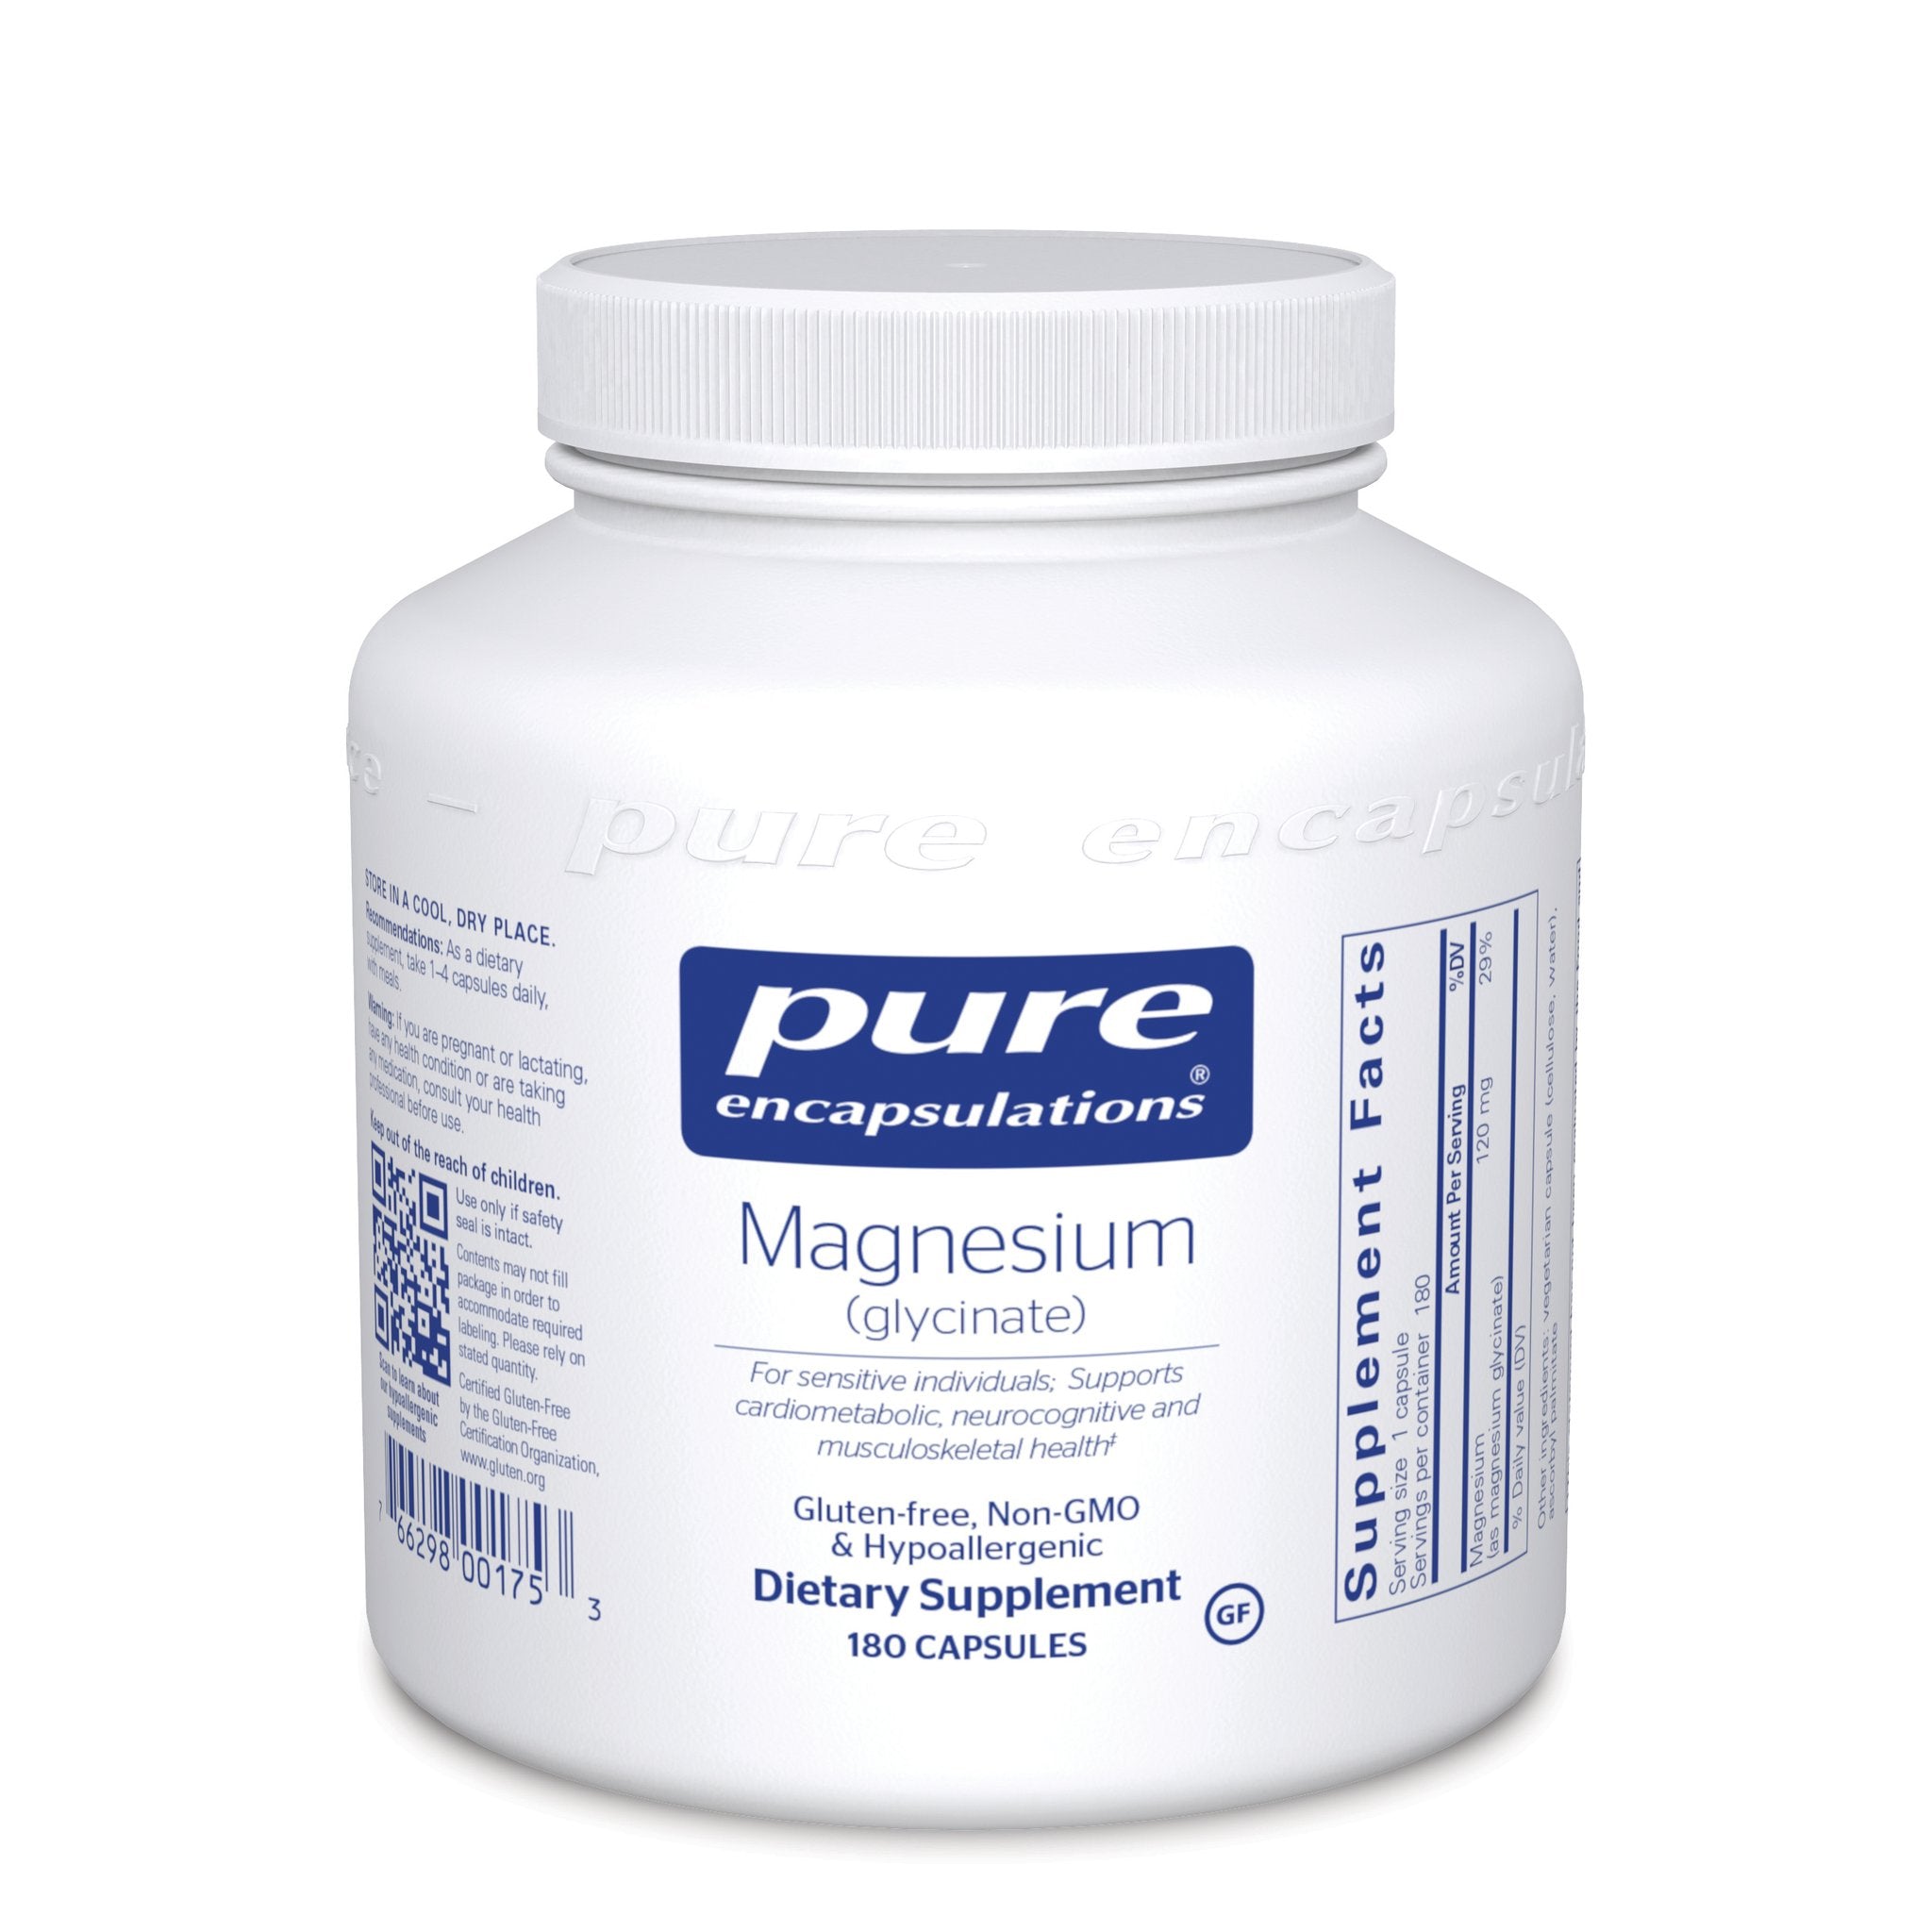 Pure Encapsulations Magnesium Glycinate Capsules 180